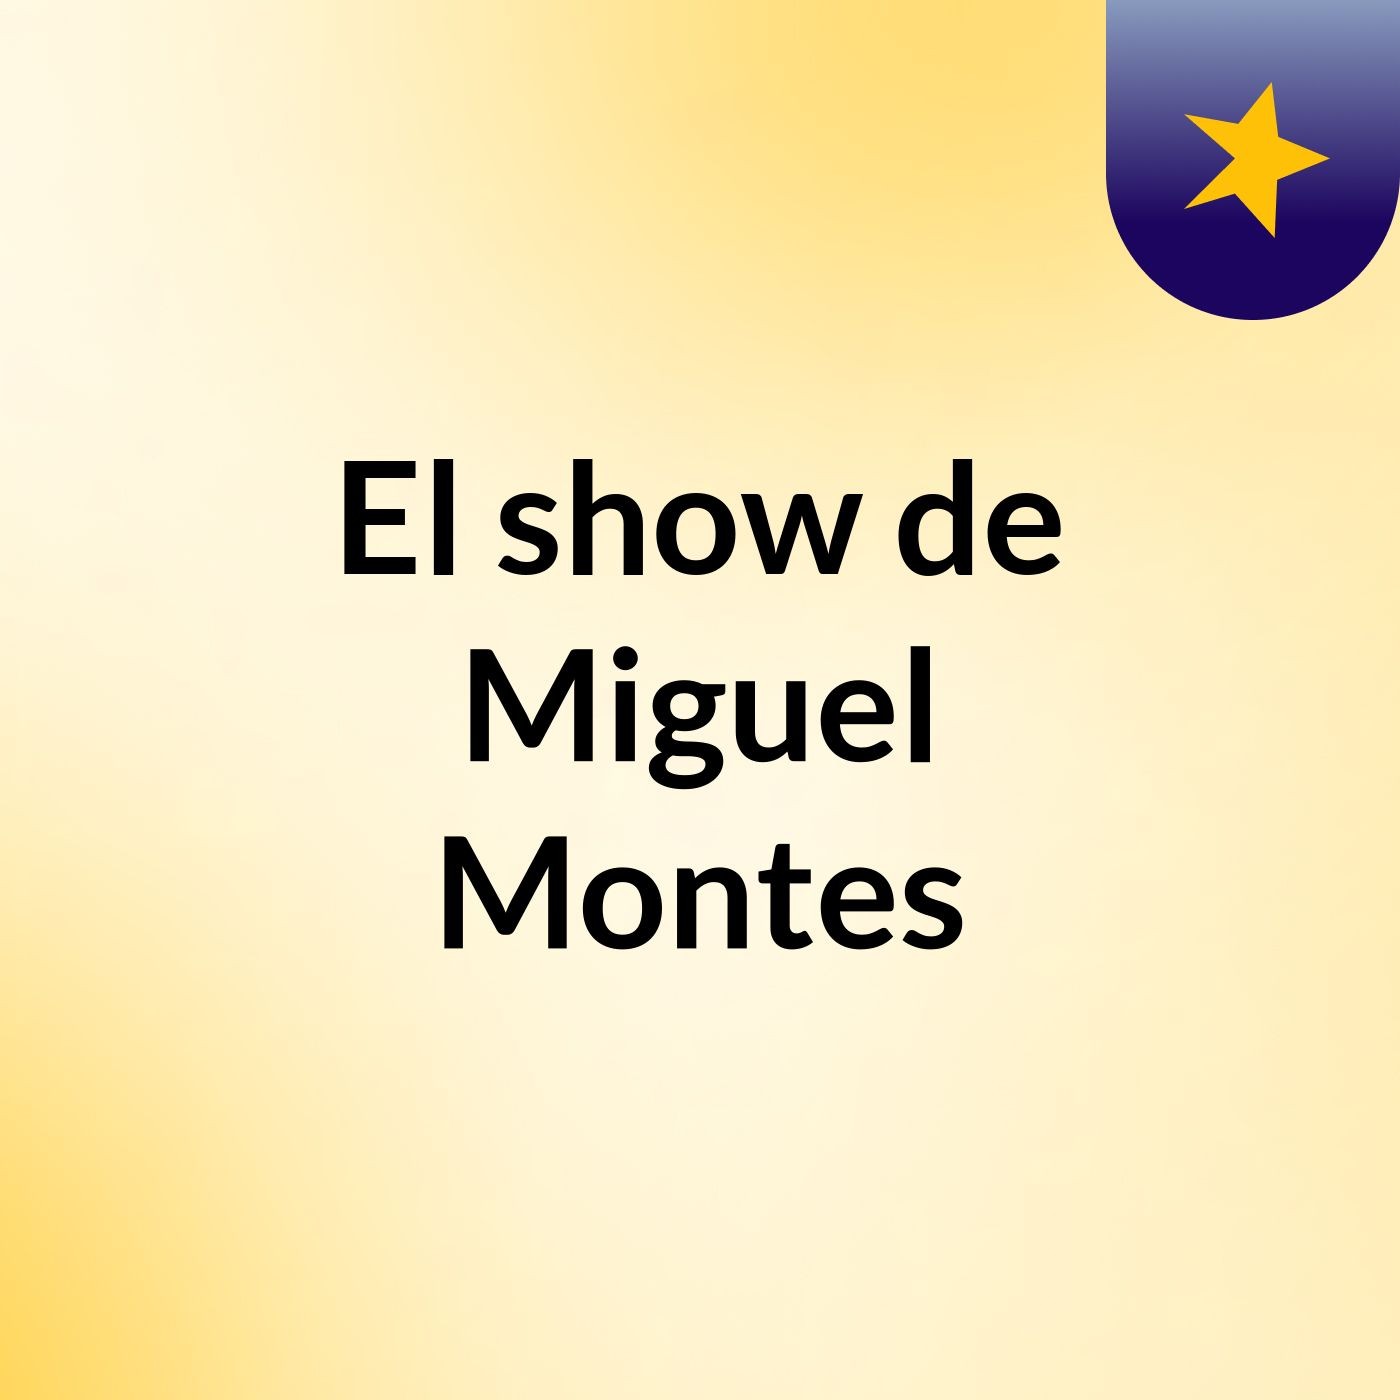 El show de Miguel Montes